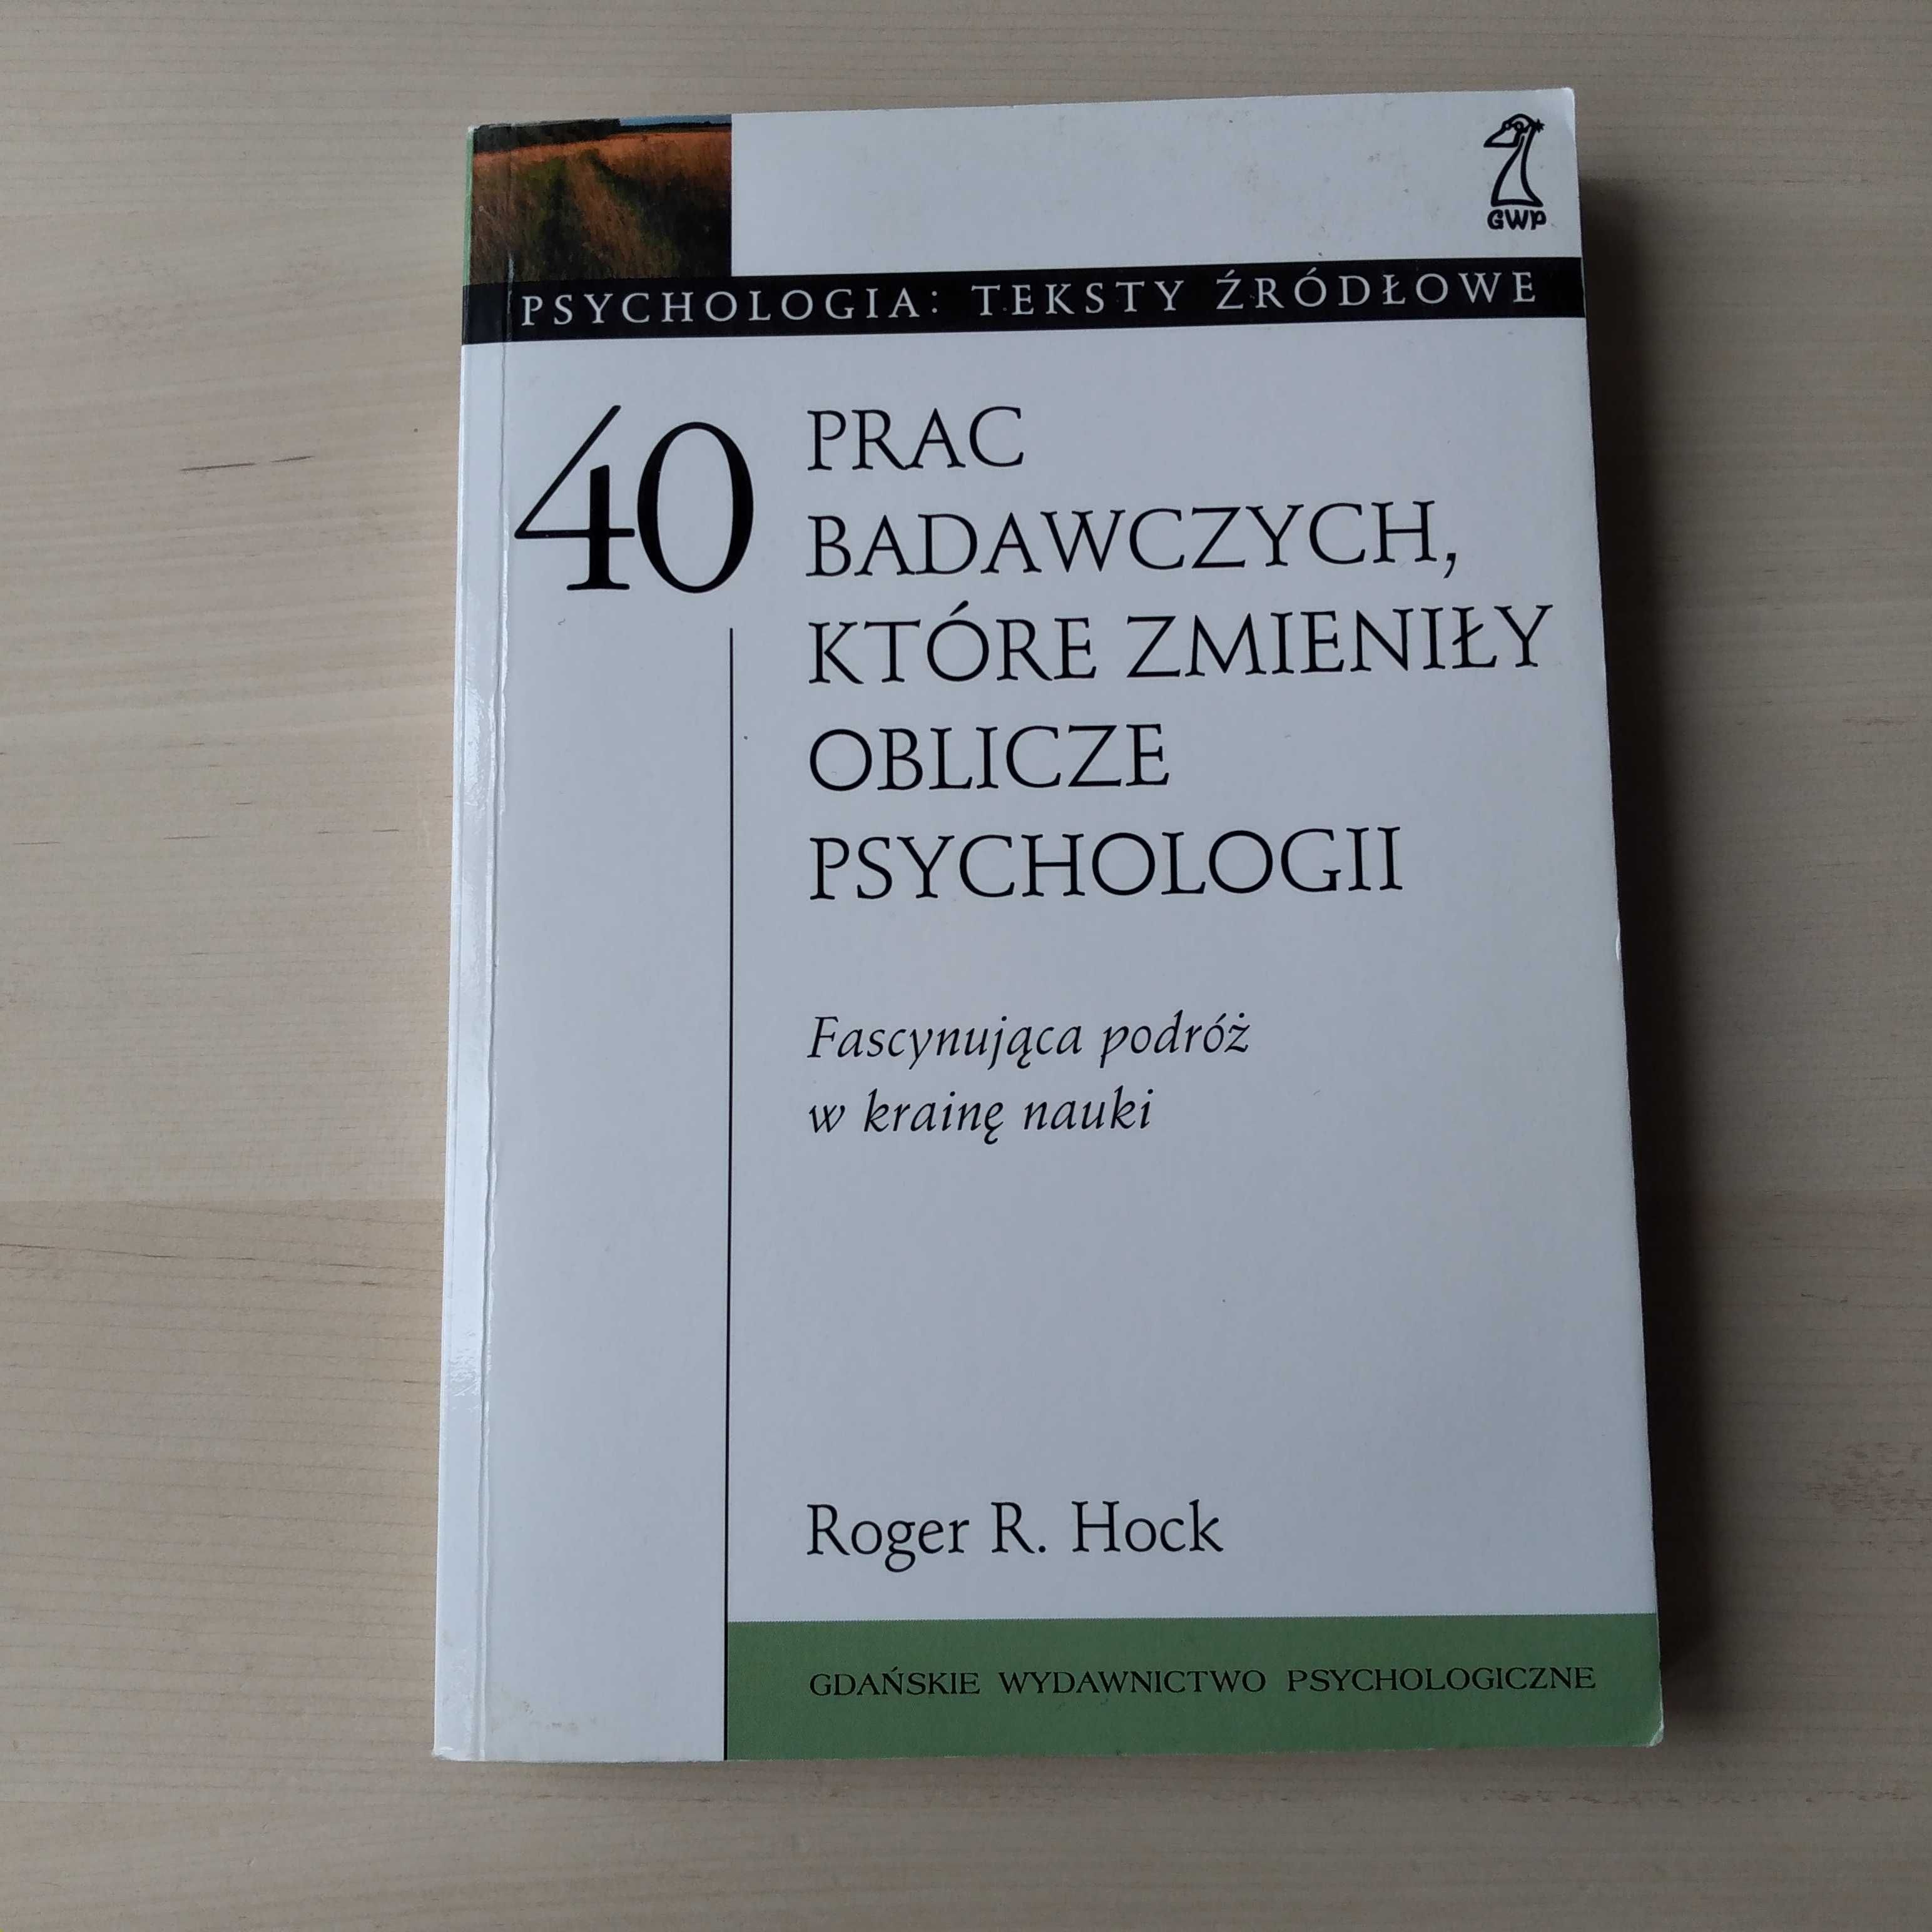 40 prac badawczych, które zmieniły oblicze psychologii Roger R. Hock